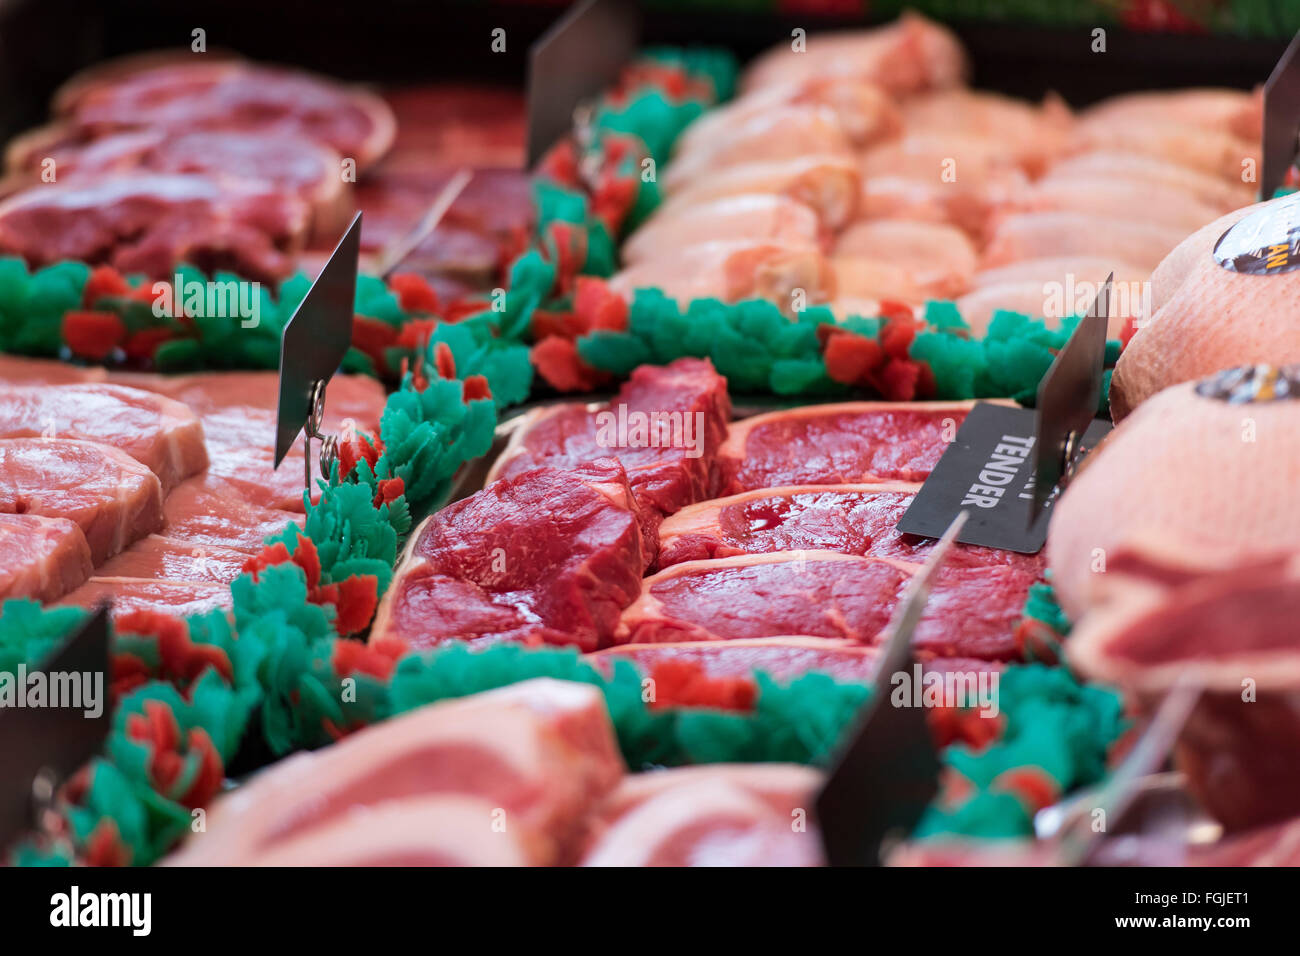 La carne roja en la pantalla de la ventana de una carnicería. Foto de stock